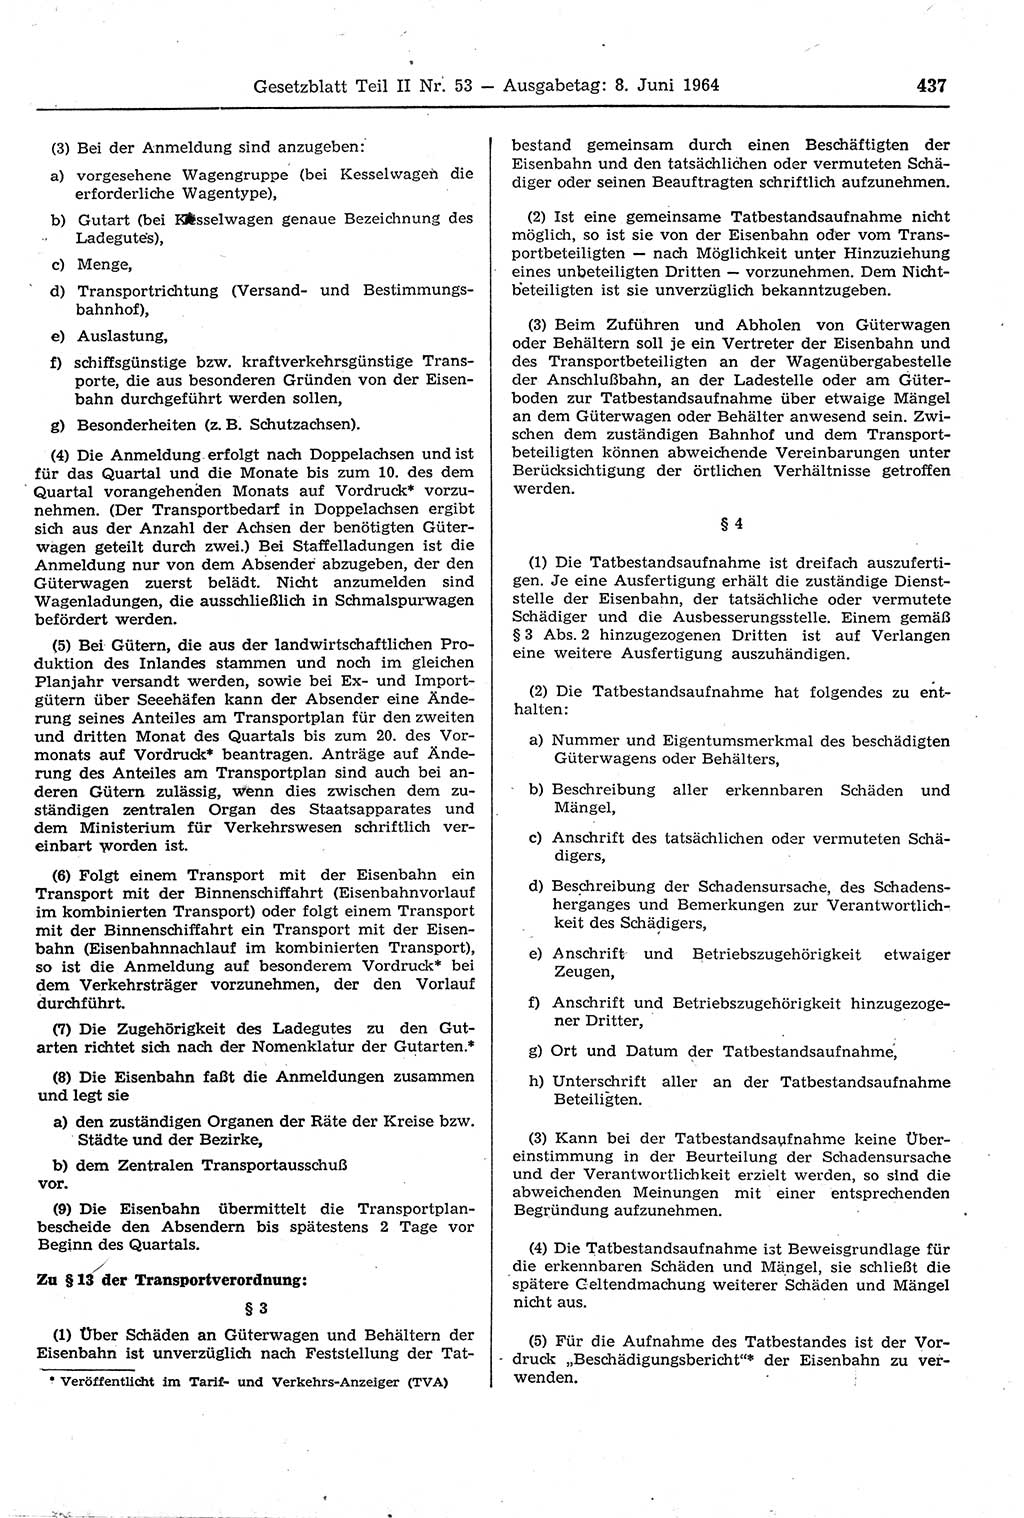 Gesetzblatt (GBl.) der Deutschen Demokratischen Republik (DDR) Teil ⅠⅠ 1964, Seite 437 (GBl. DDR ⅠⅠ 1964, S. 437)